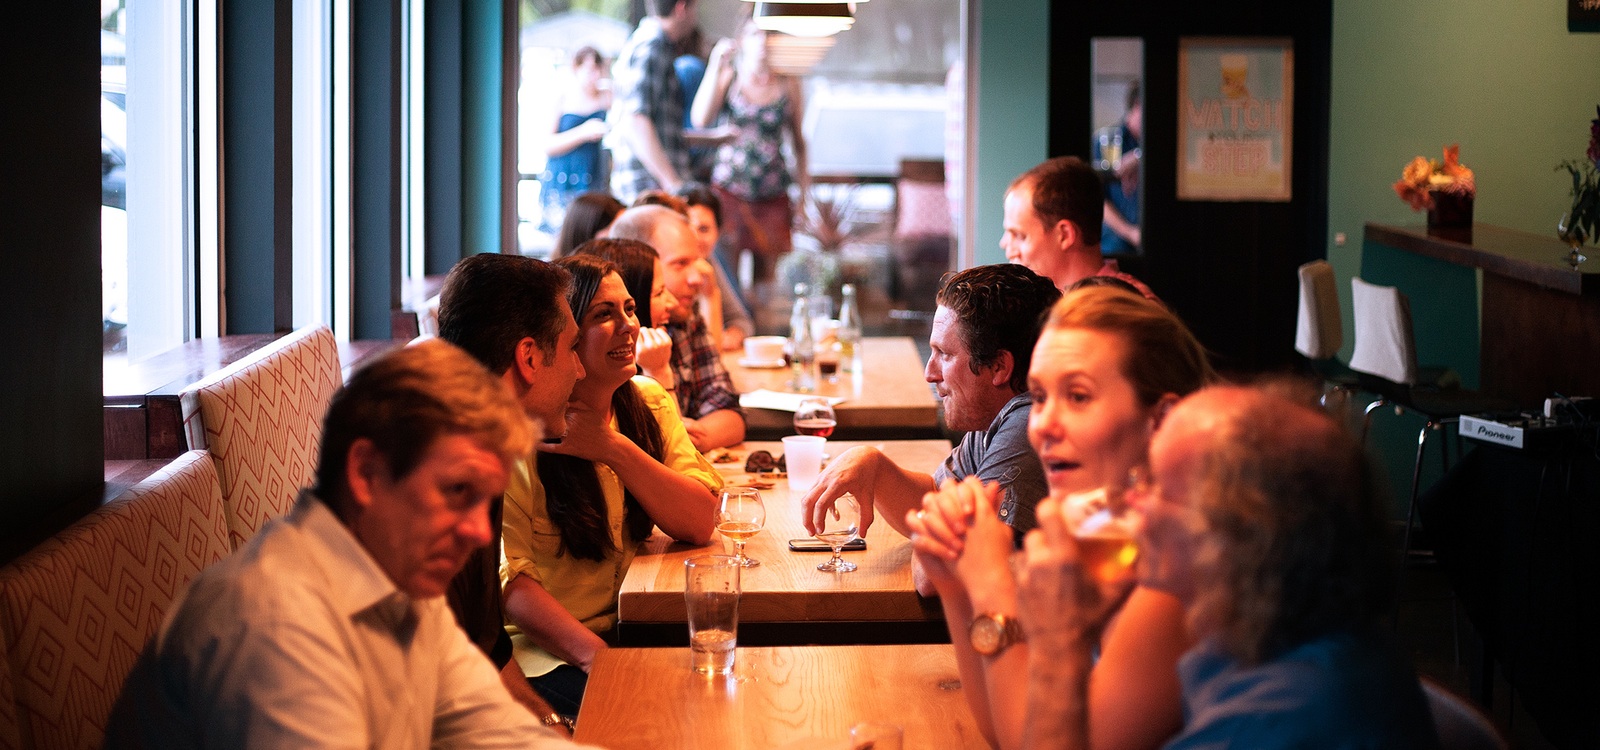 Los bares continuaron creciendo durante 2015 - La Viña